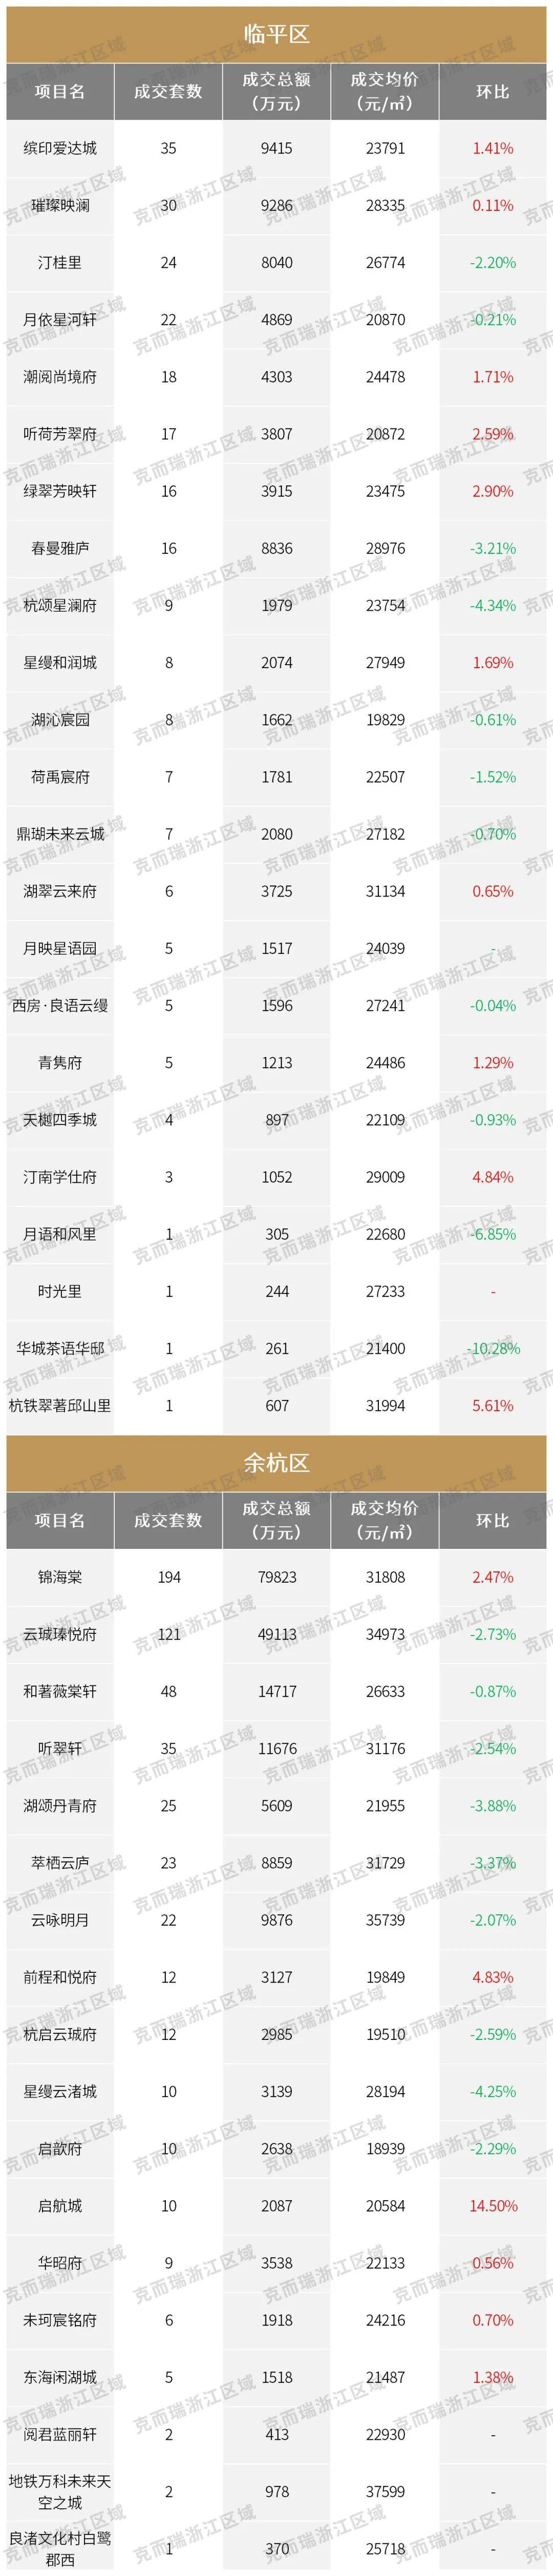 32395元/㎡,杭州房价回升至去年同期水平!